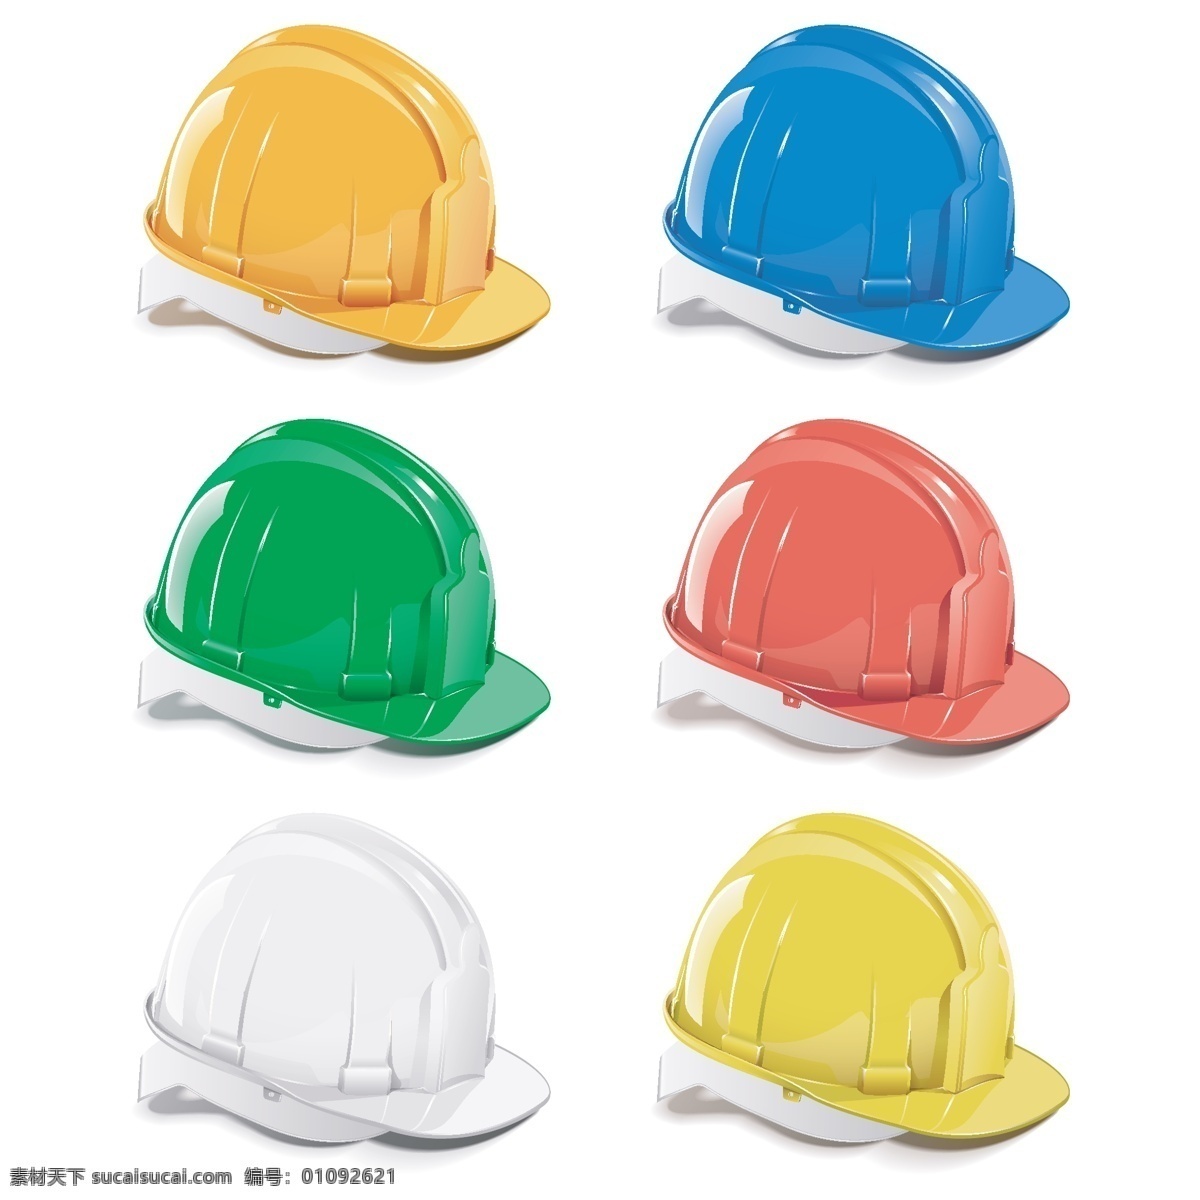 彩色安全帽 彩色 工地 施工 工具 工具设计 工具素材 彩色工具 施工工具 工程图 安全帽 警示图标 工程图标 生活百科 矢量素材 白色